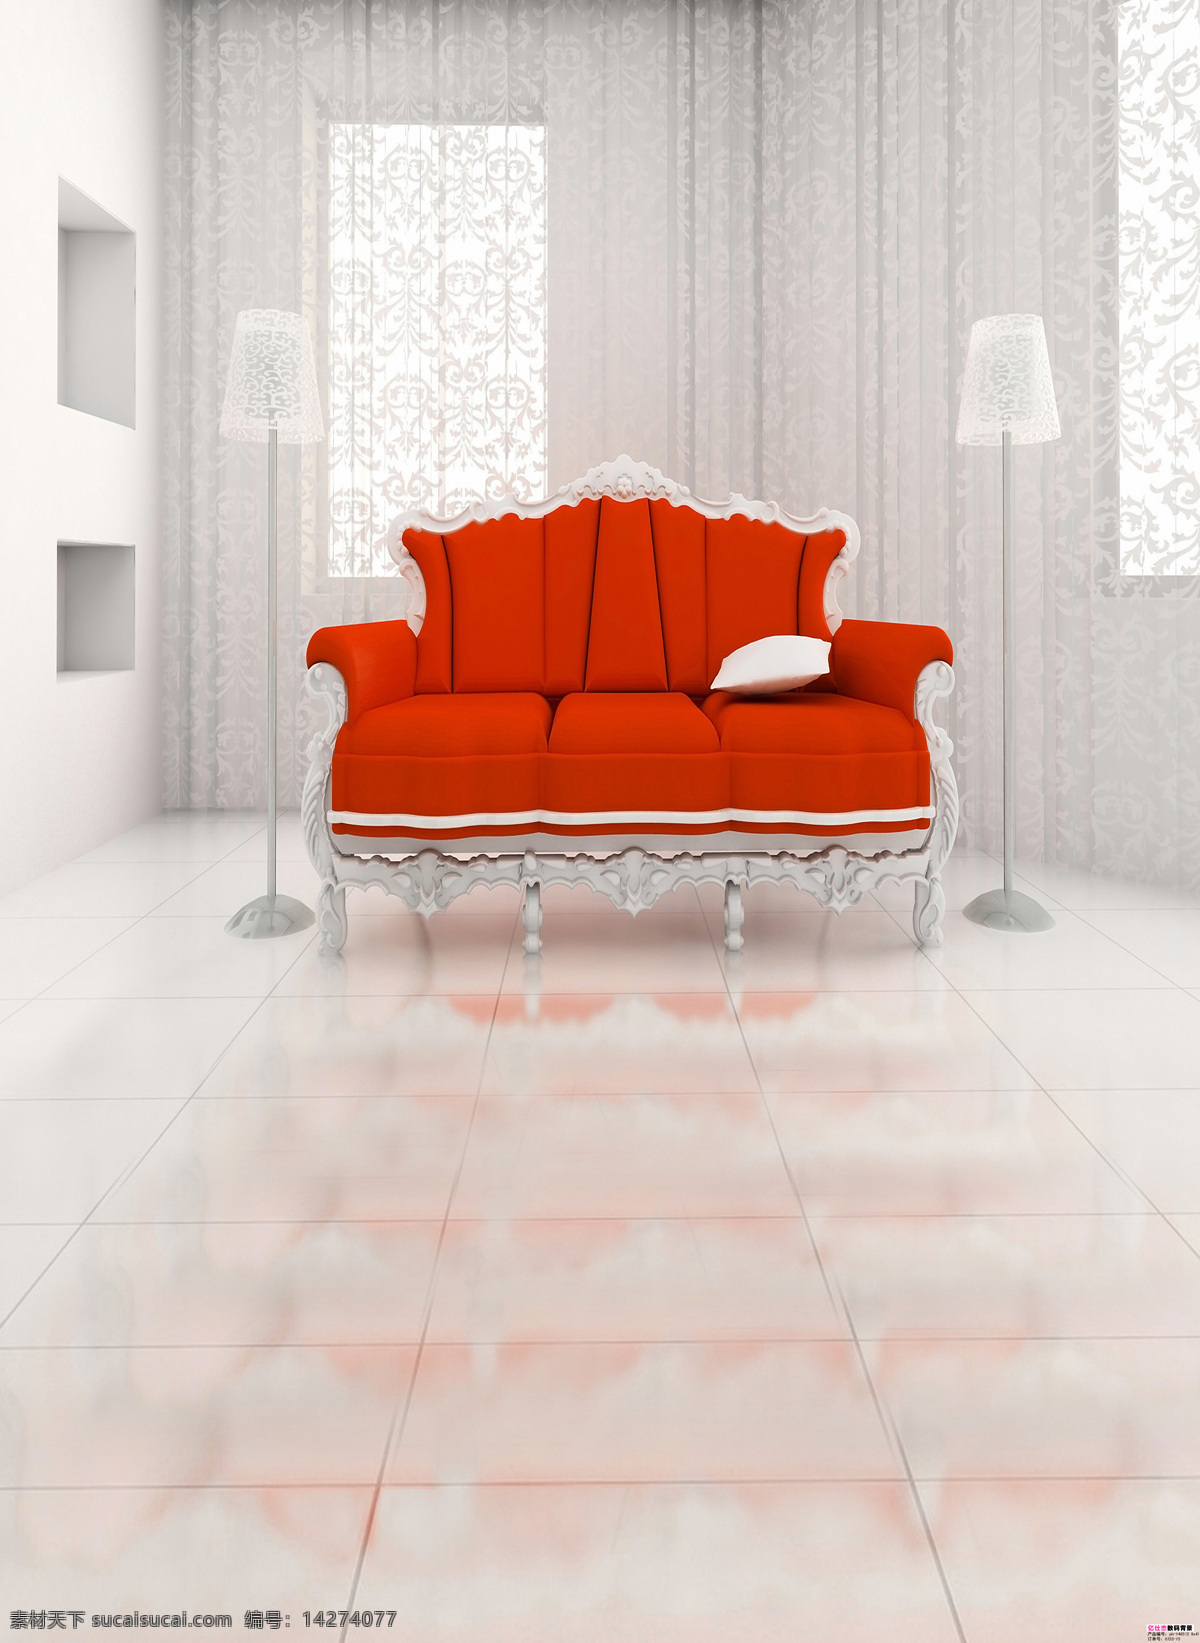 沙发背景 超大 尺寸 3d设计 现代风 红沙发 唯美现代 白色台灯 蕾丝窗帘 3d模型素材 其他3d模型